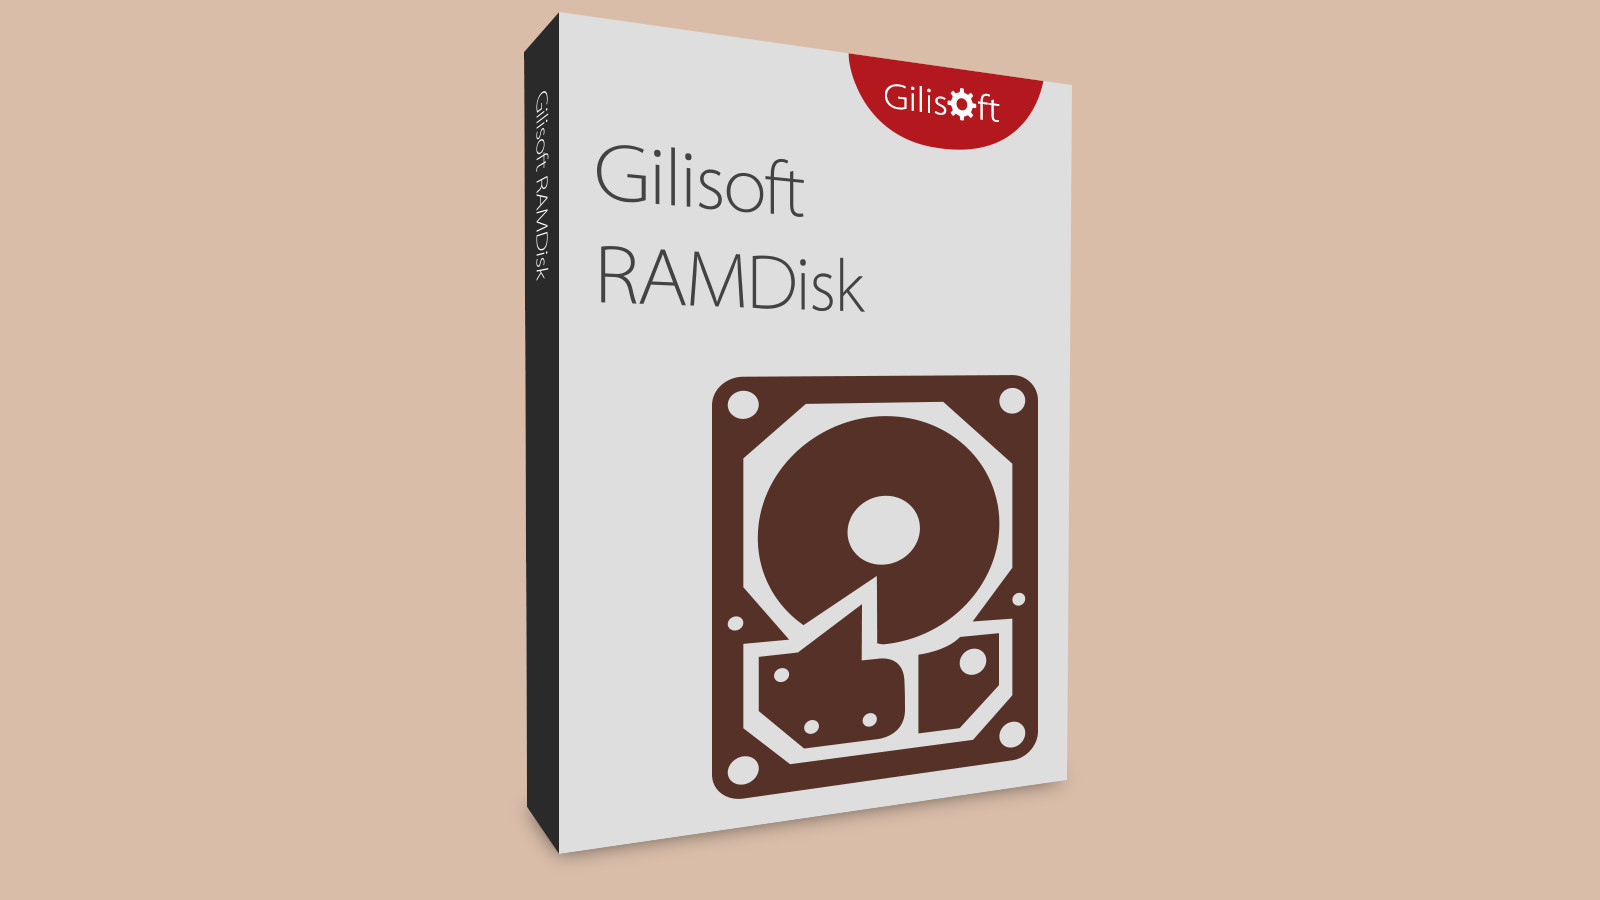 Gilisoft RAMDisk CD Key 15.54 usd